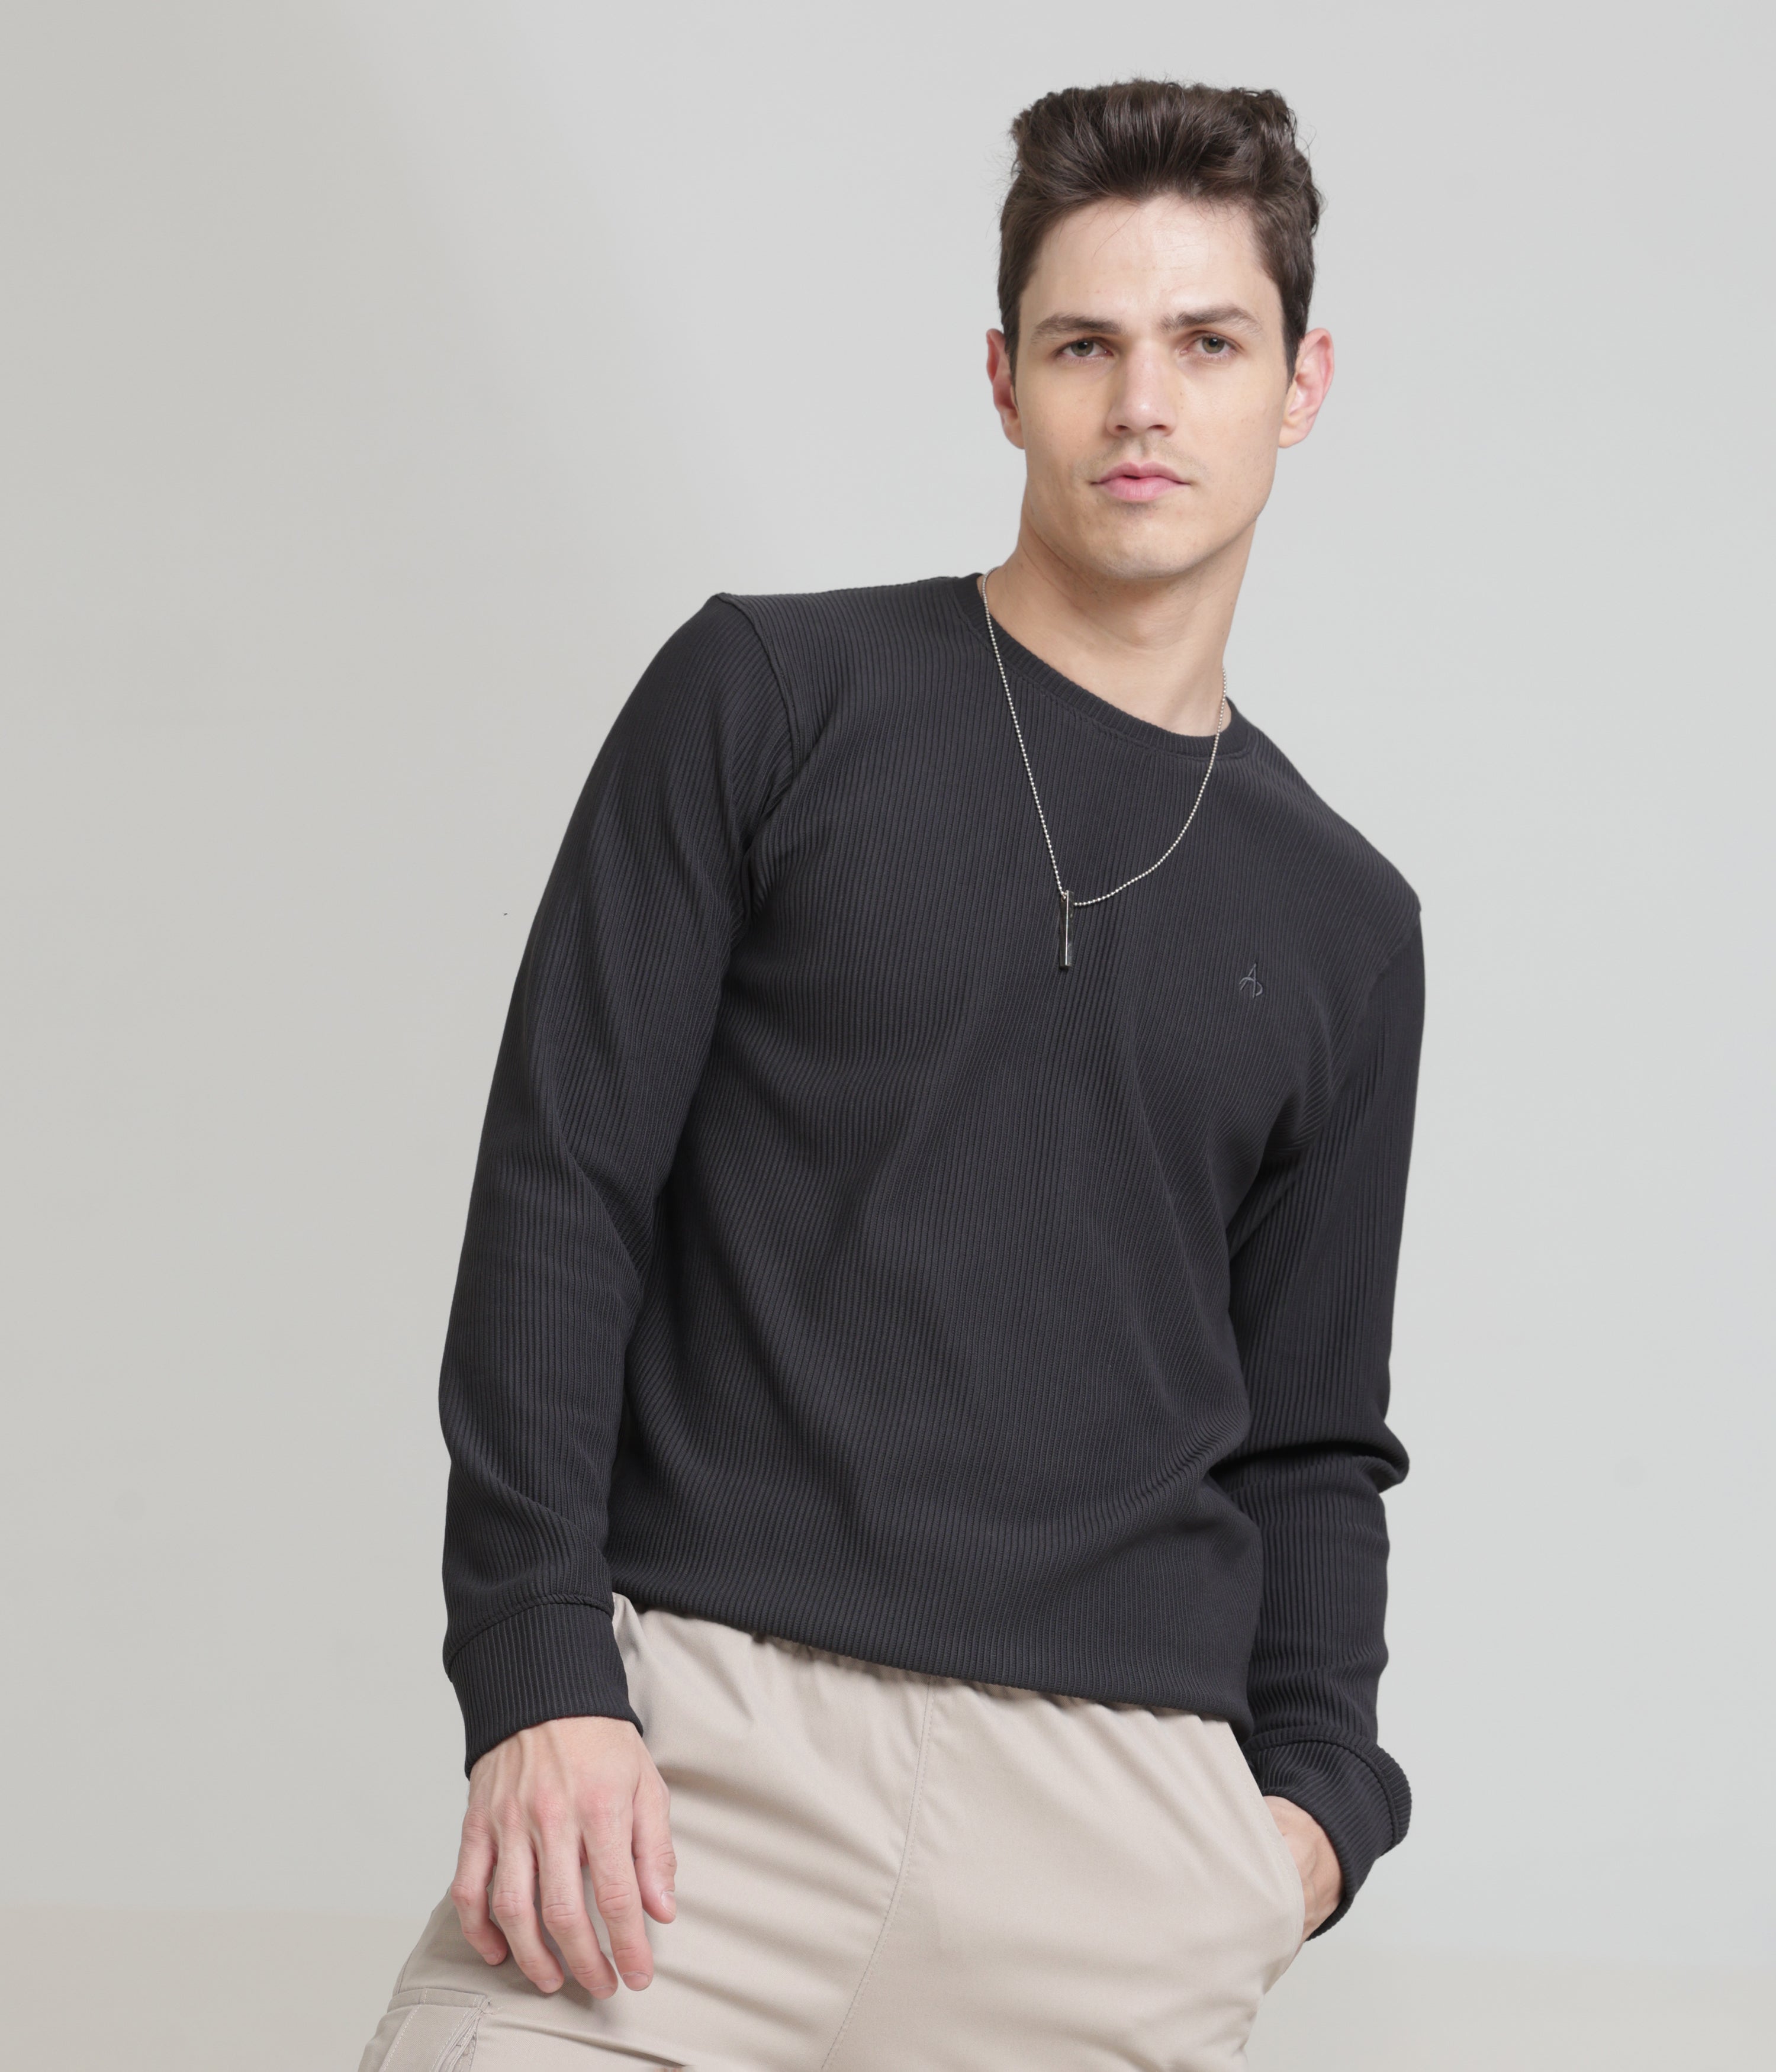 Dark Grey Regular Fit Sweatshirt: Cozy Comfort for Casual Days